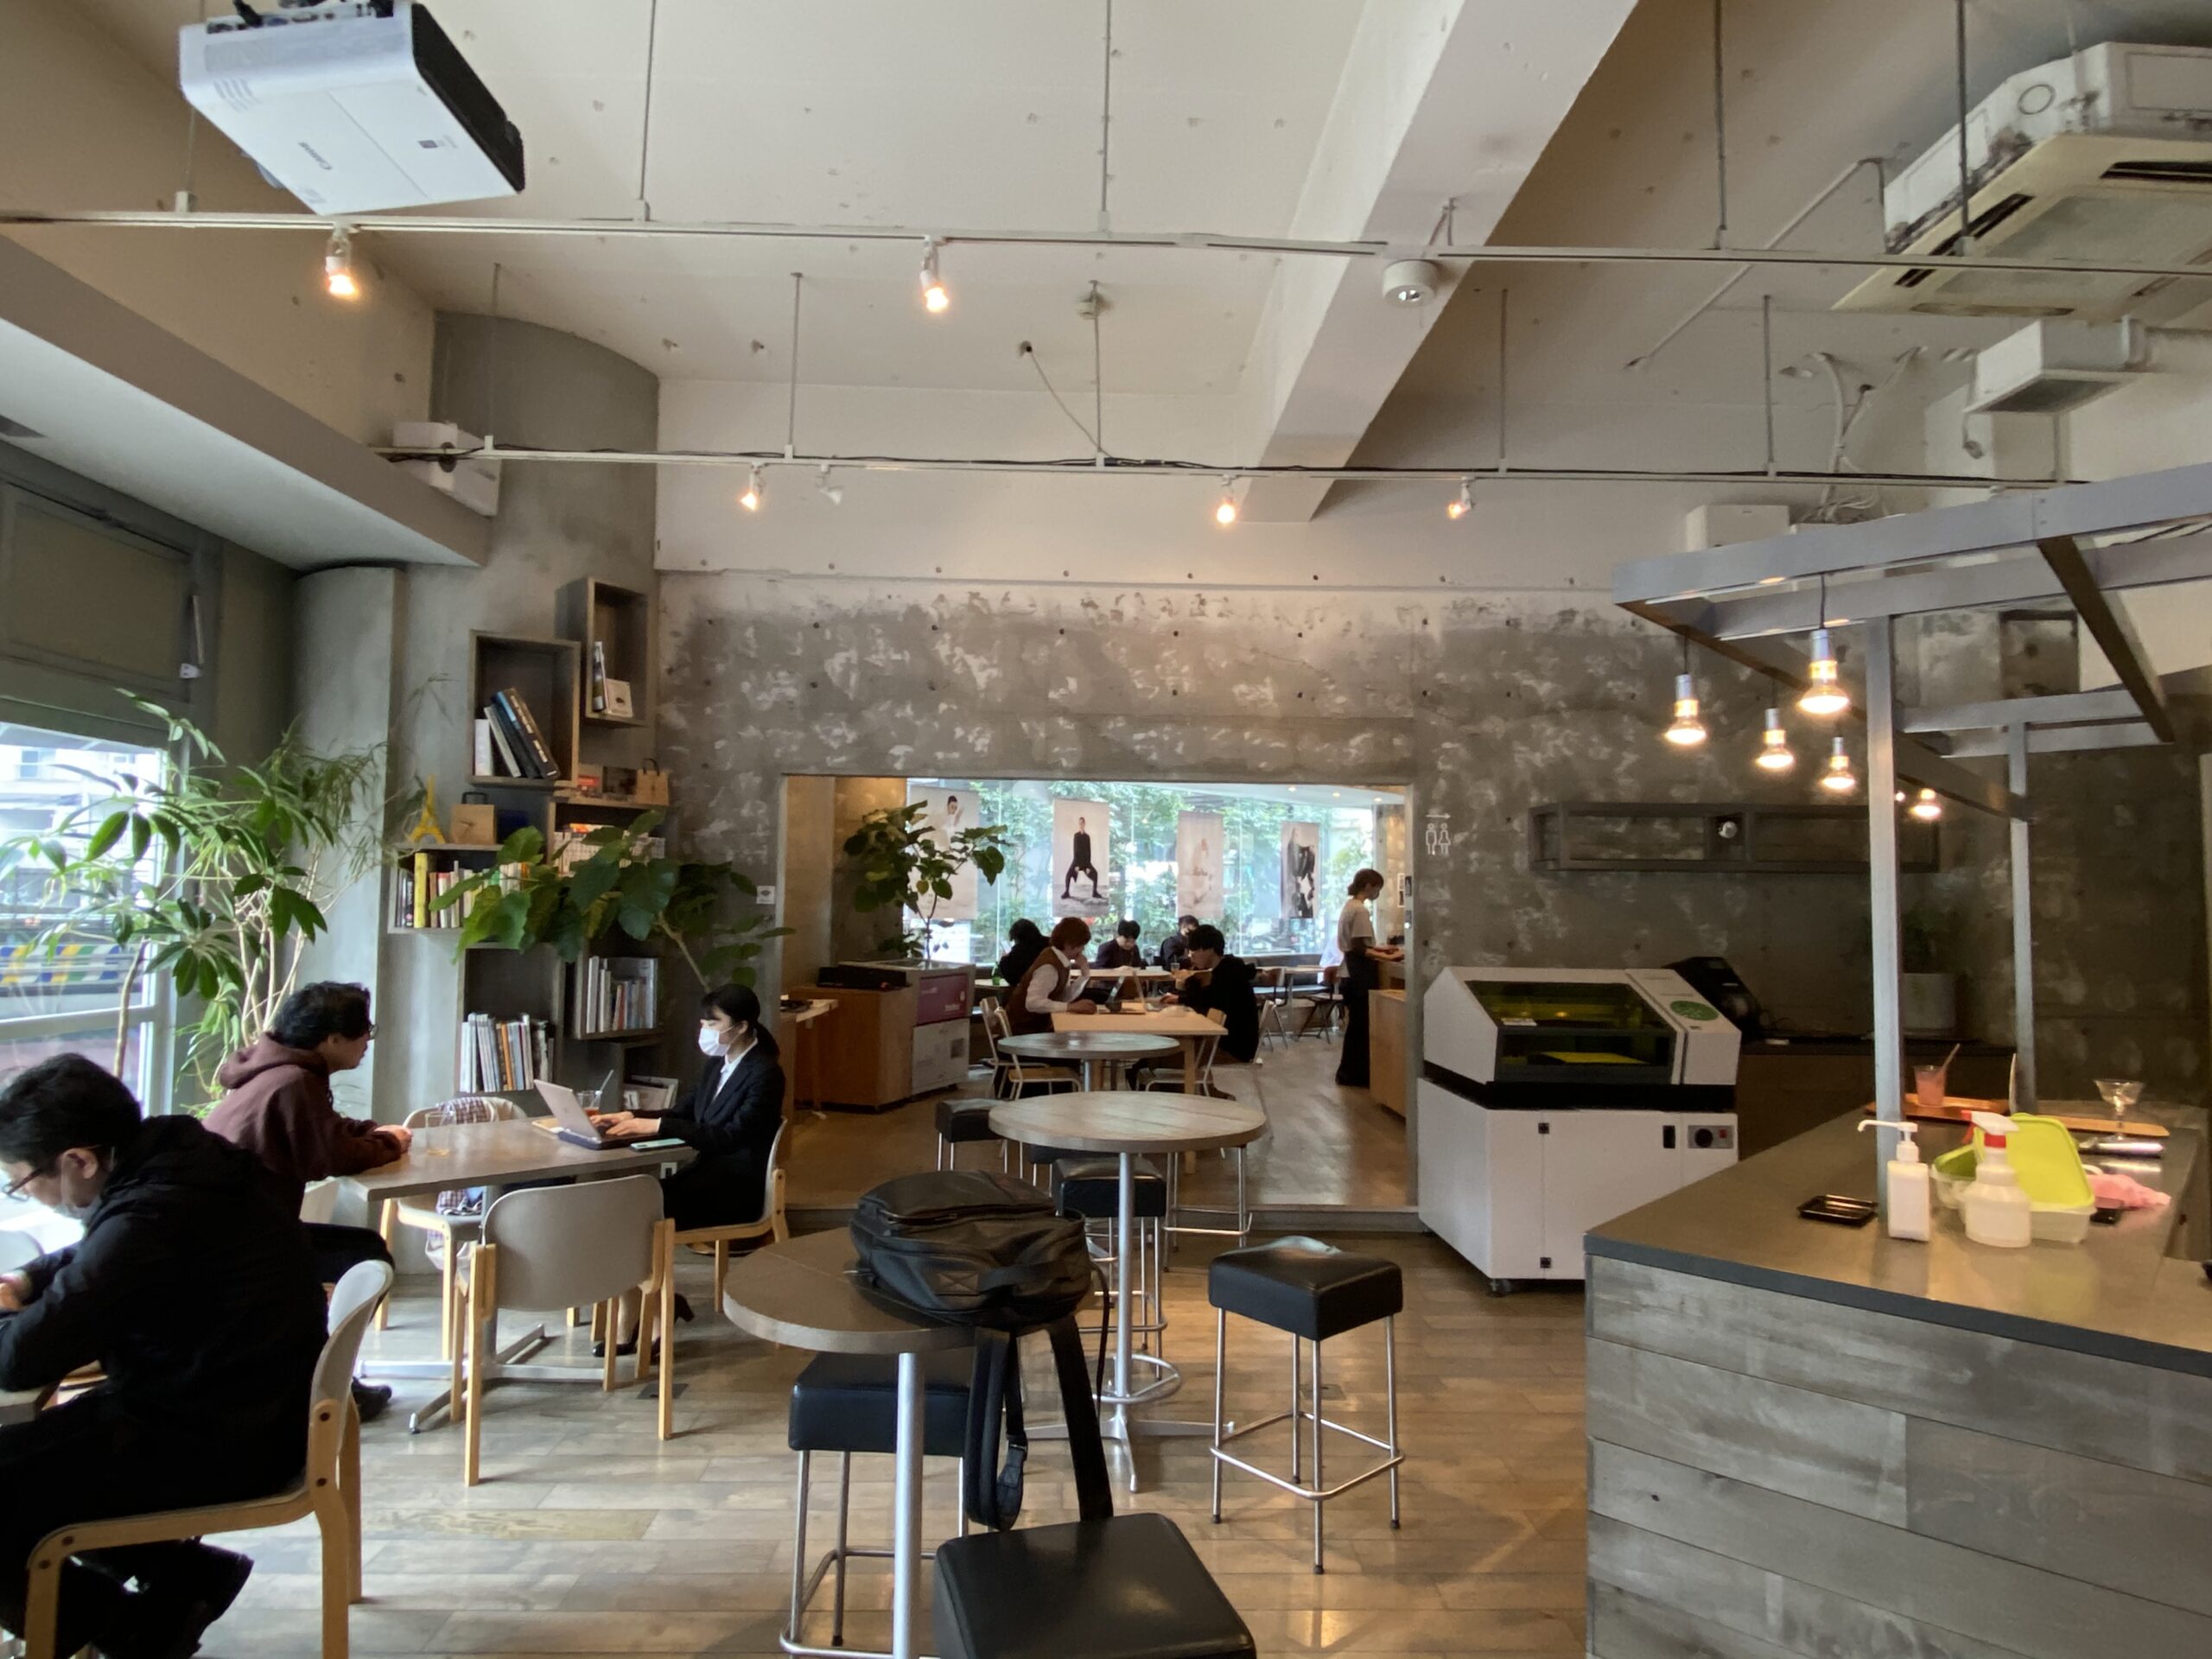 ブルートラベルエンジニア パソコン作業（プログラミング学習環境）におすすめのカフェ|渋谷